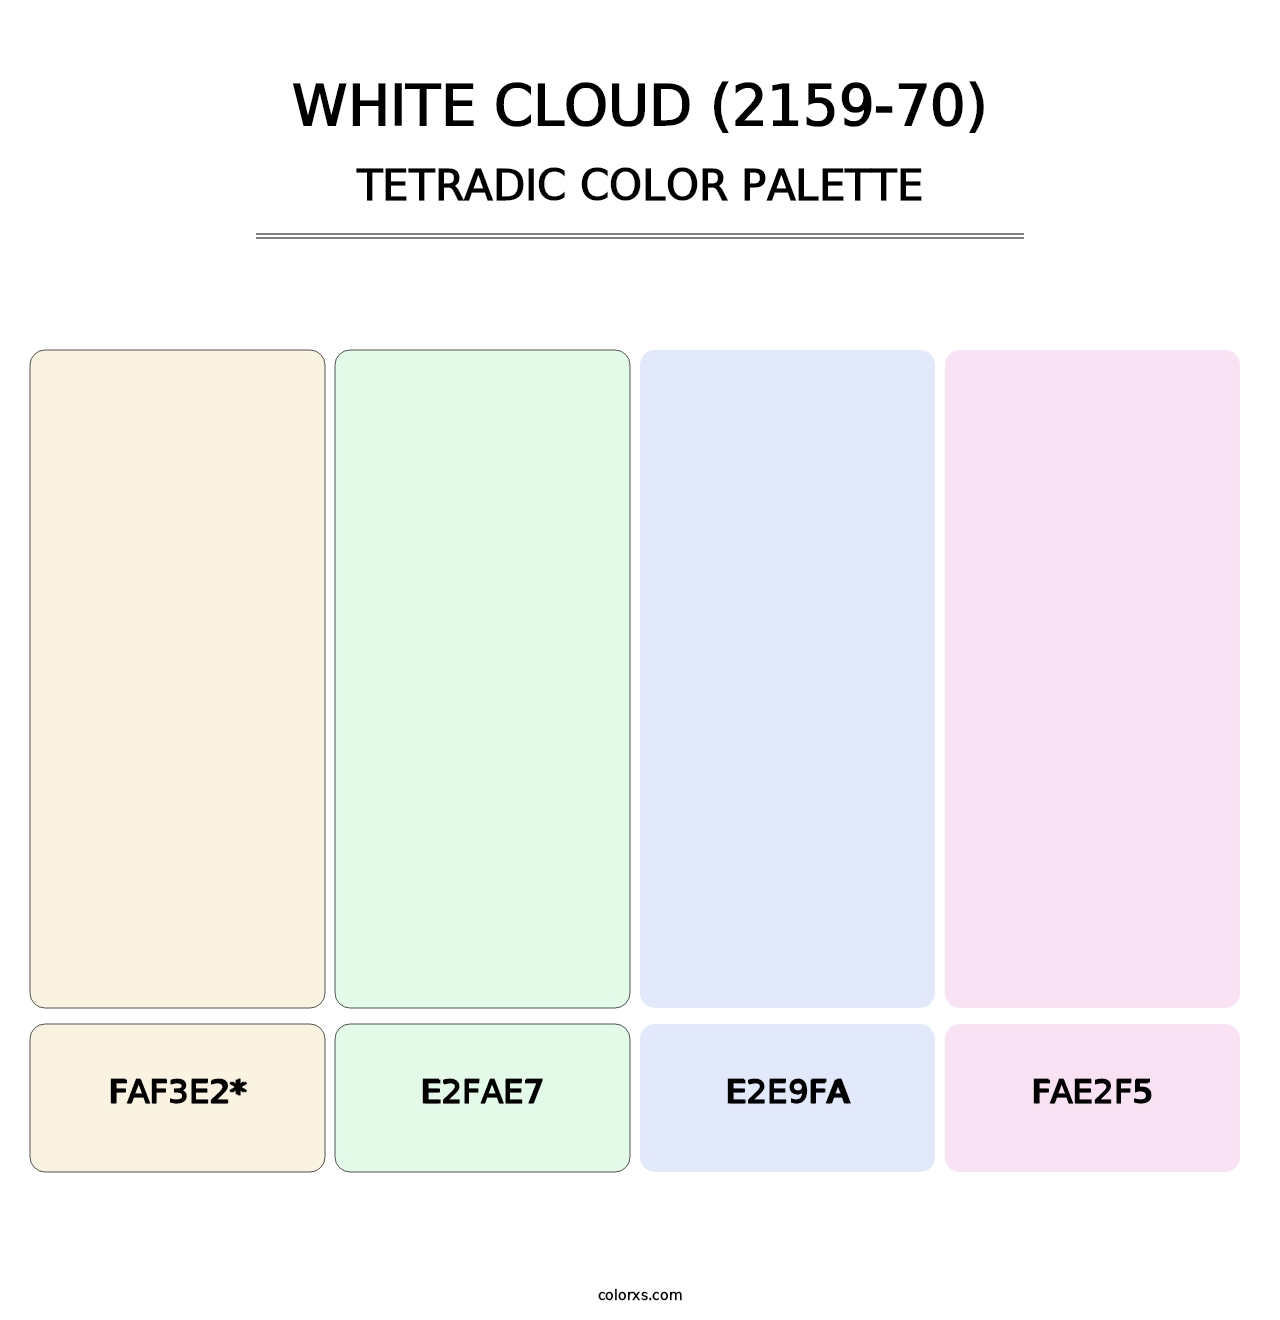 White Cloud (2159-70) - Tetradic Color Palette